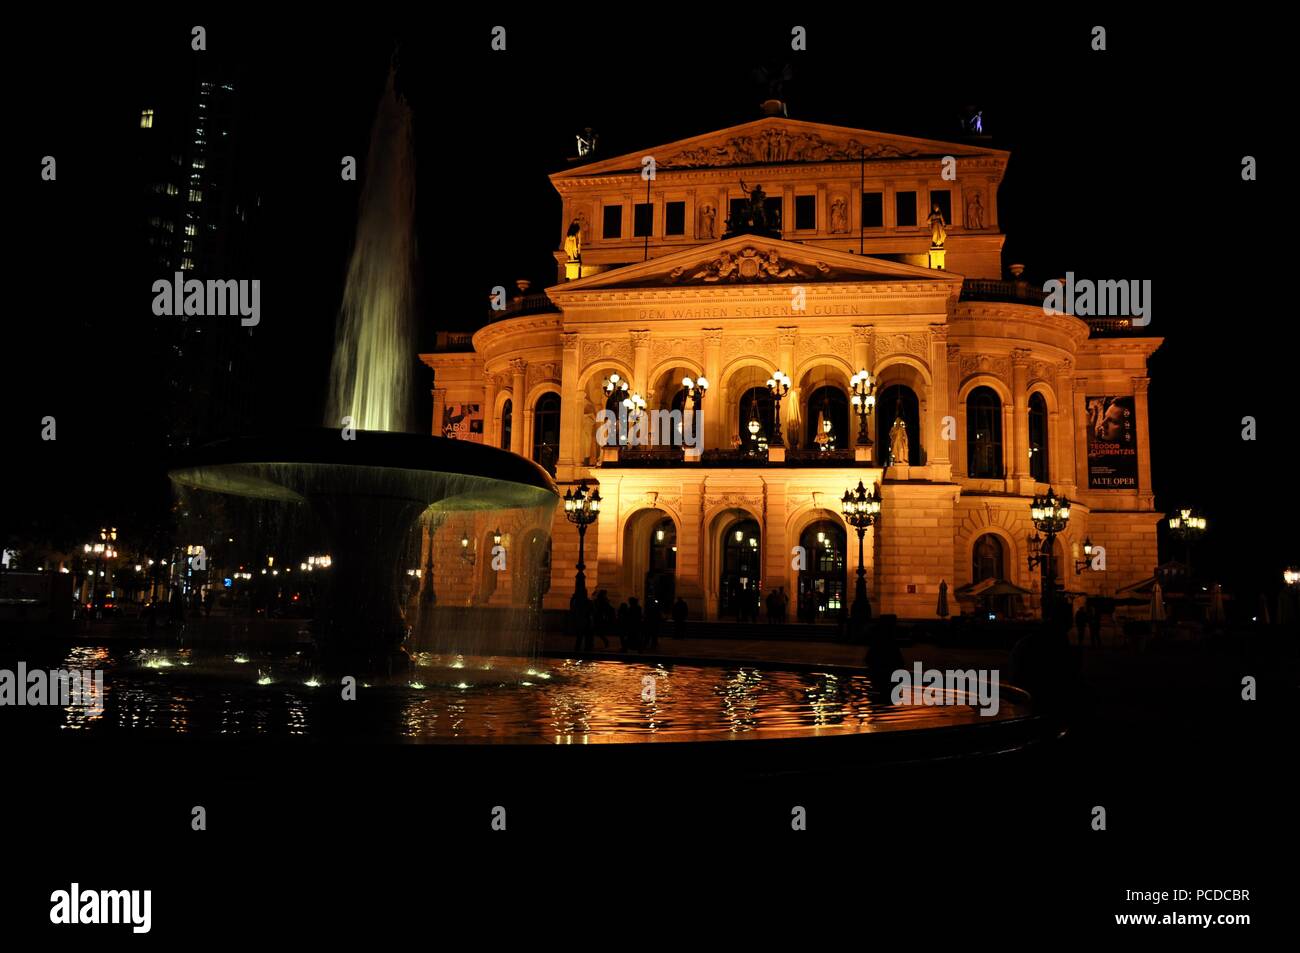 Vieil Opéra (Alte Oper) par nuit, Frankfurt am Main, Allemagne Banque D'Images